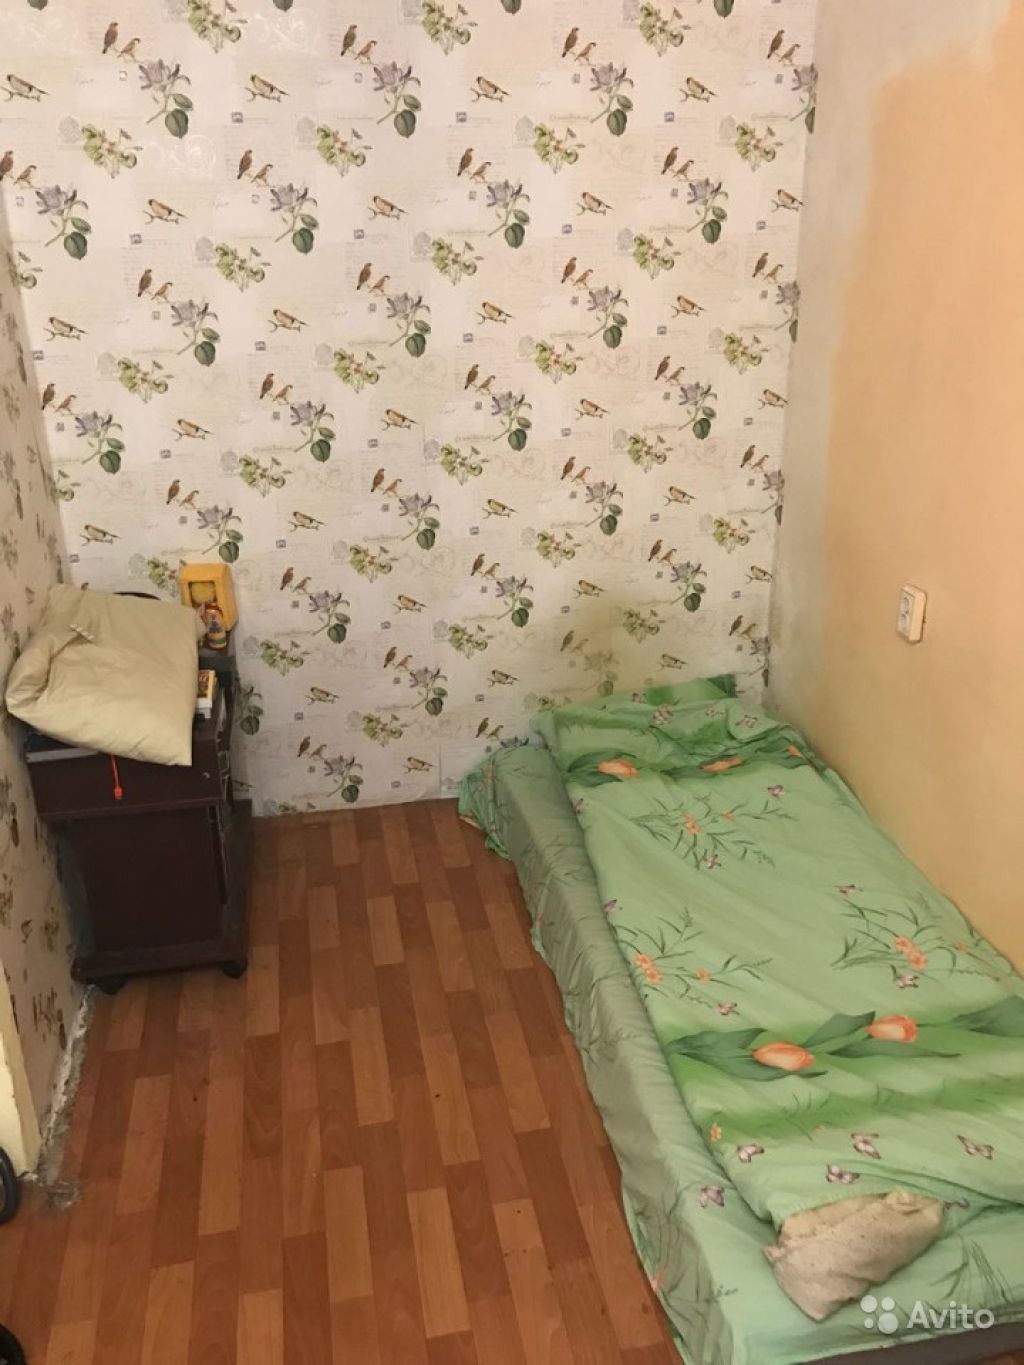 Сдам комнату Комната 18 м² в 1-к квартире на 1 этаже 14-этажного кирпичного дома в Москве. Фото 1